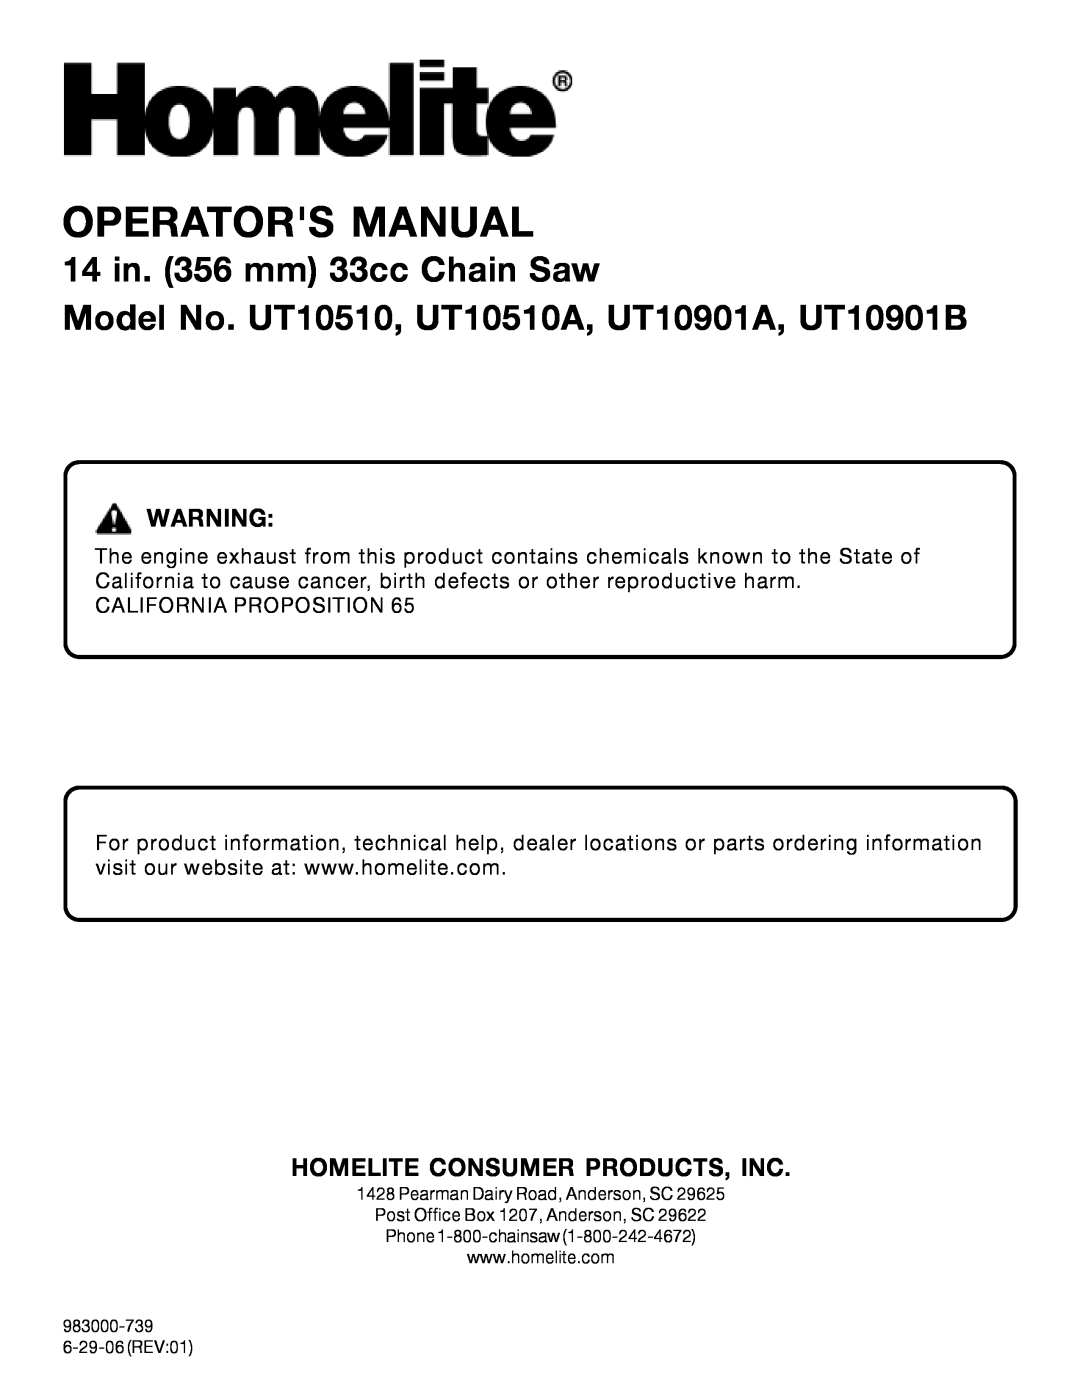 Homelite manual Operators Manual, 14 in. 356 mm 33cc Chain Saw, Model No. UT10510, UT10510A, UT10901A, UT10901B 